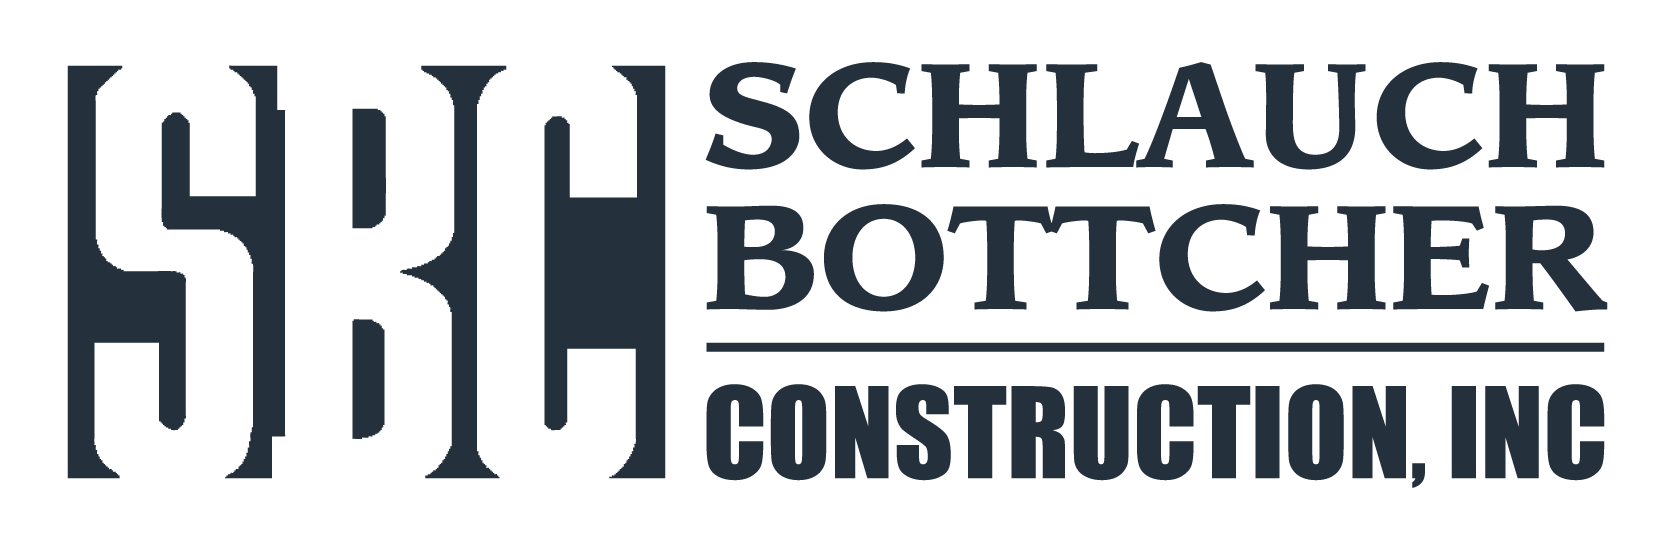 SCHLAUCH BOTTCHER CONSTRUCTION LOGO